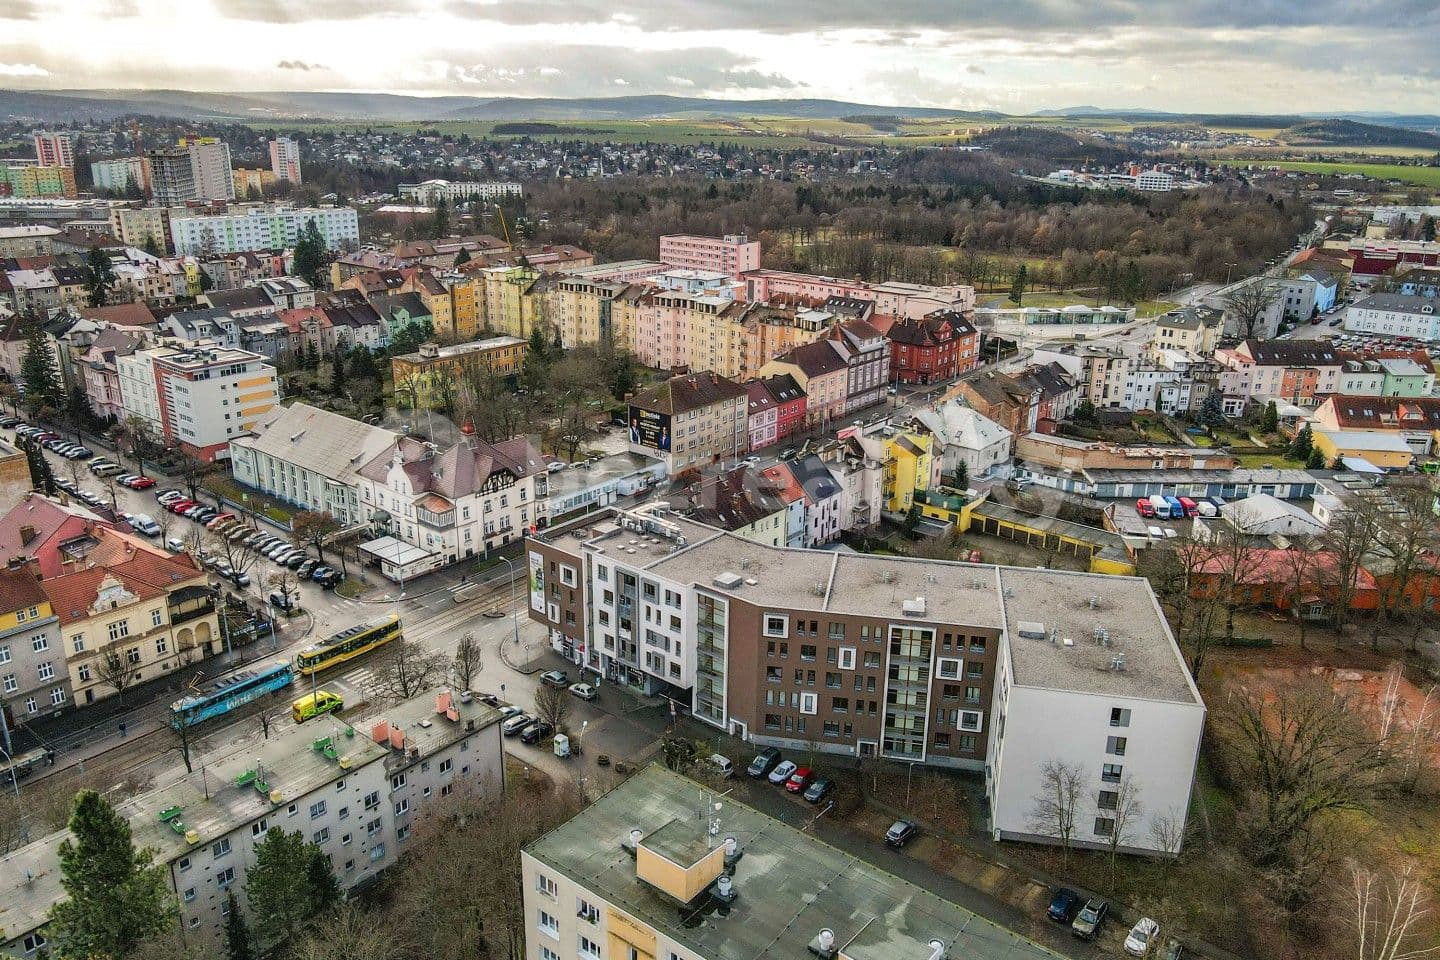 Predaj nebytového priestoru 80 m², Boettingerova, Plzeň, Plzeňský kraj